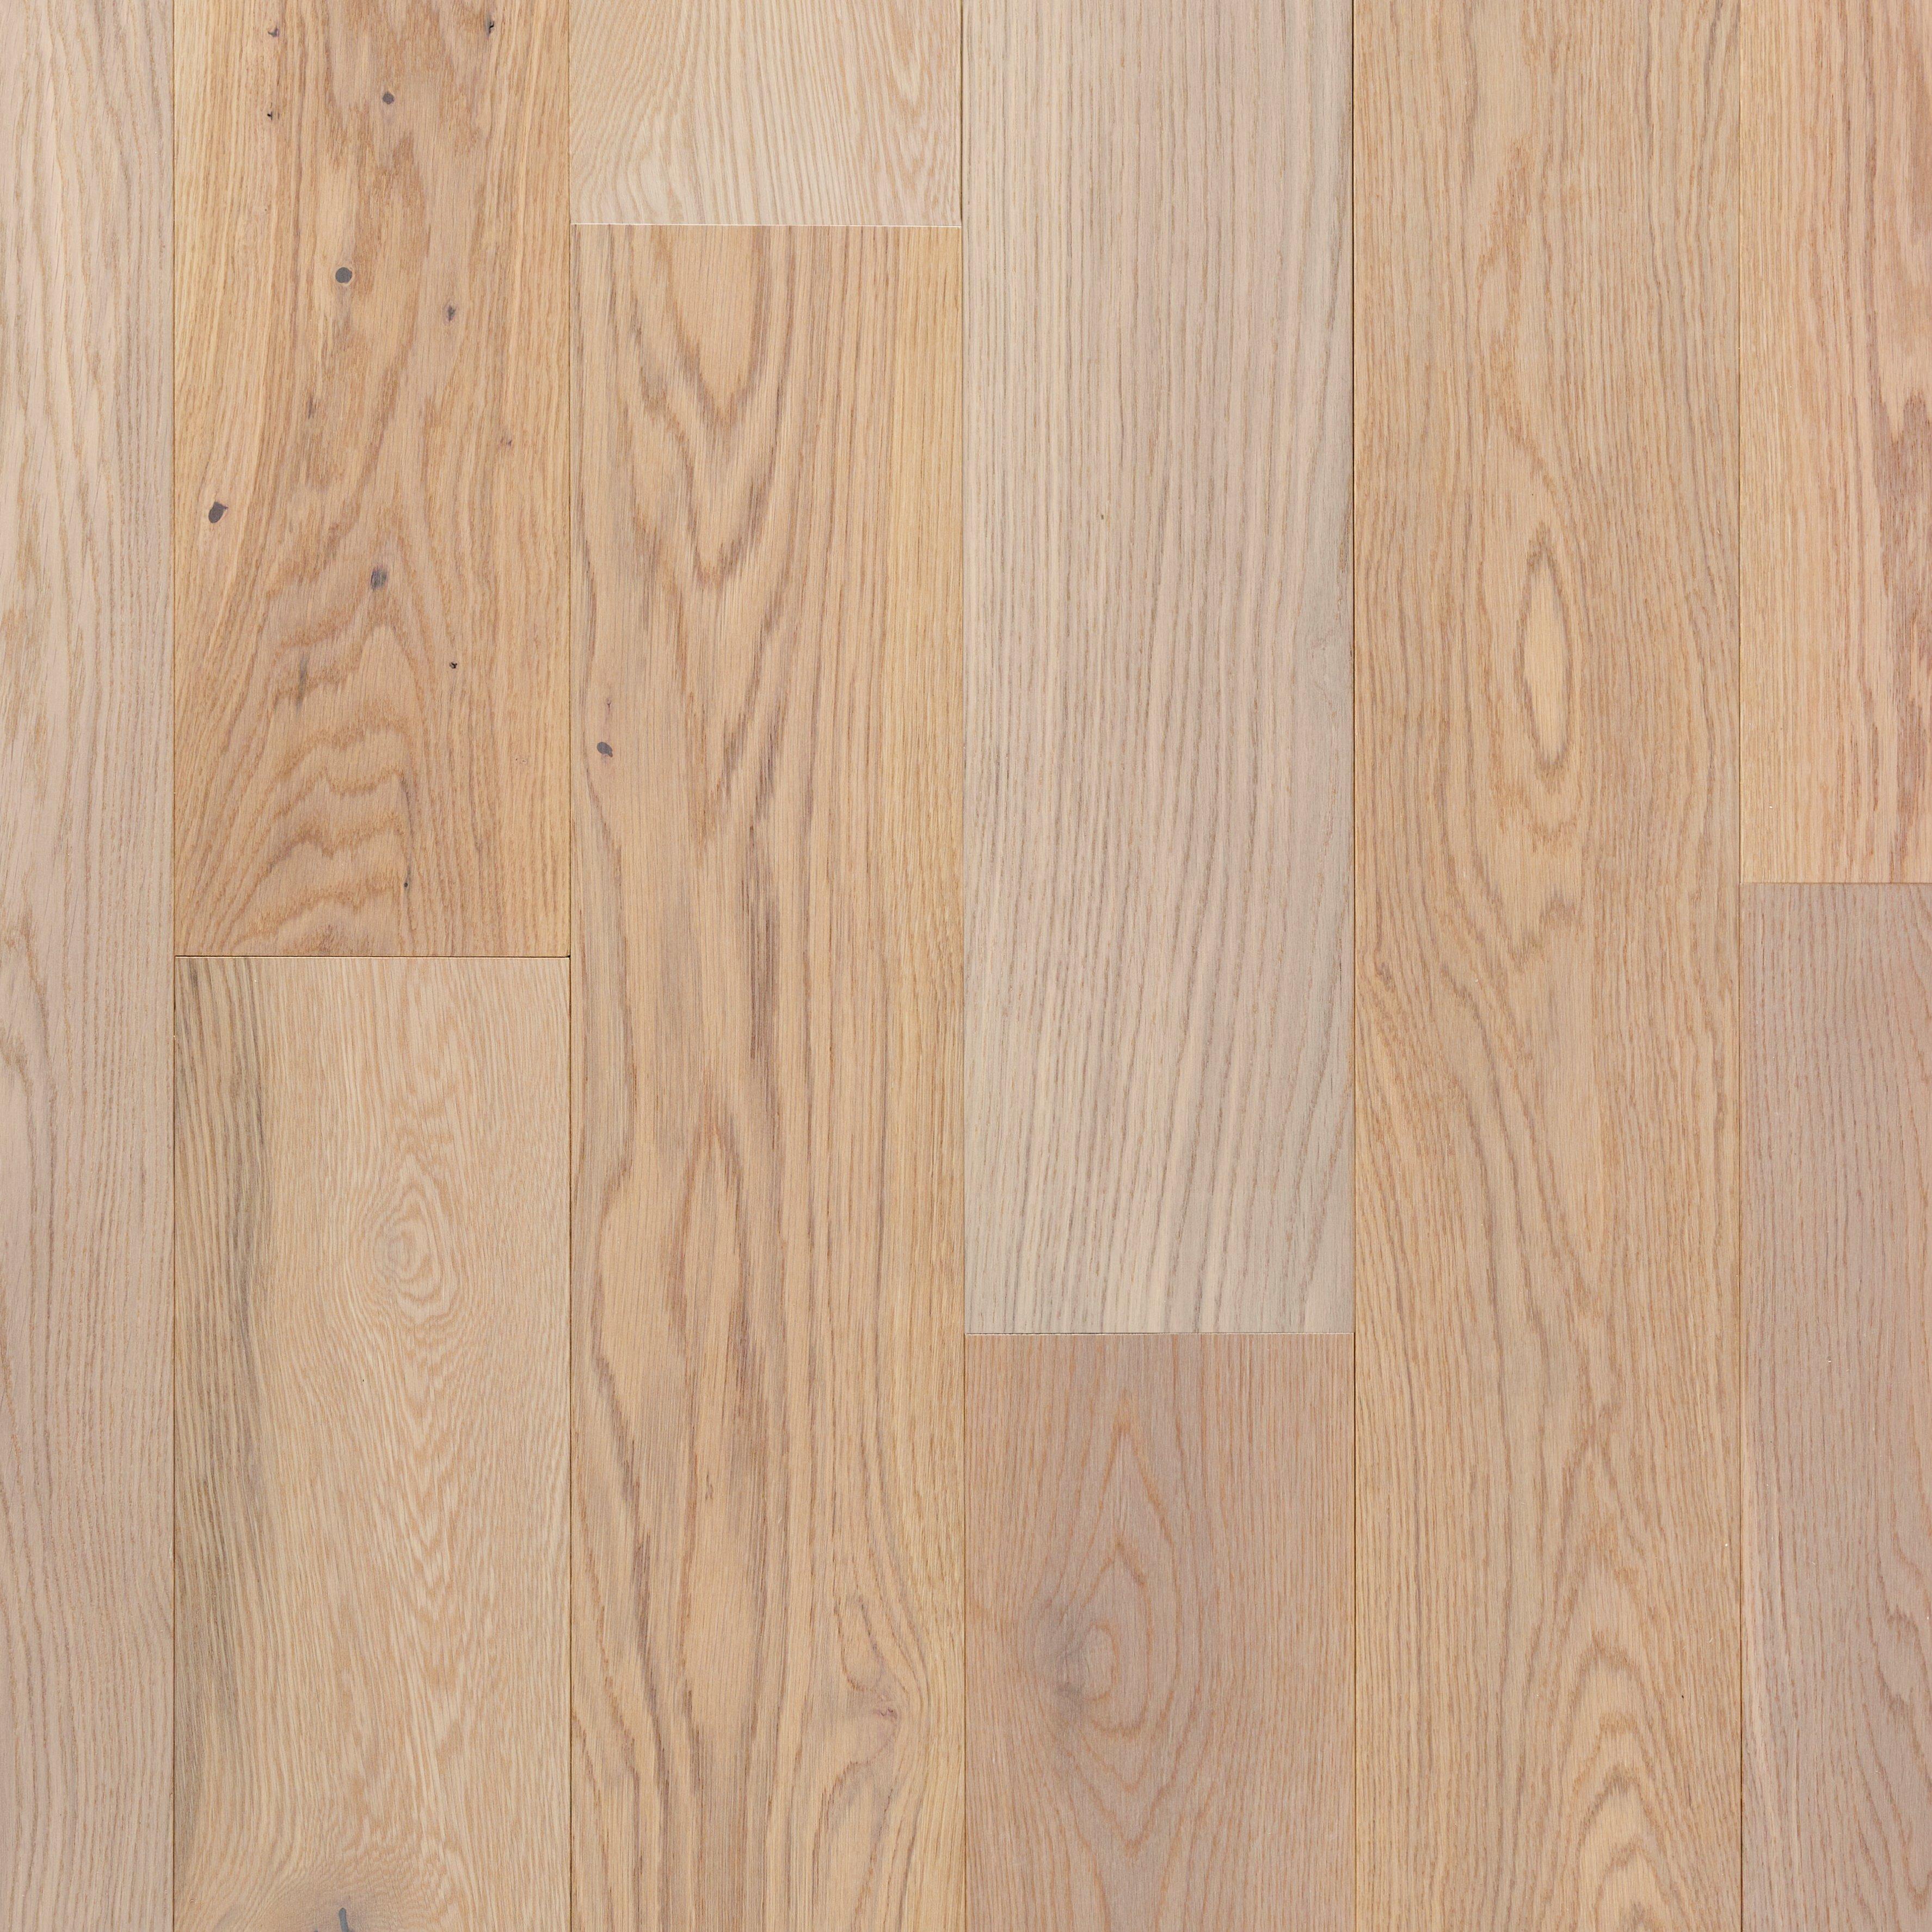 Apollo White Oak Flextech Smooth, White Engineered Hardwood Flooring